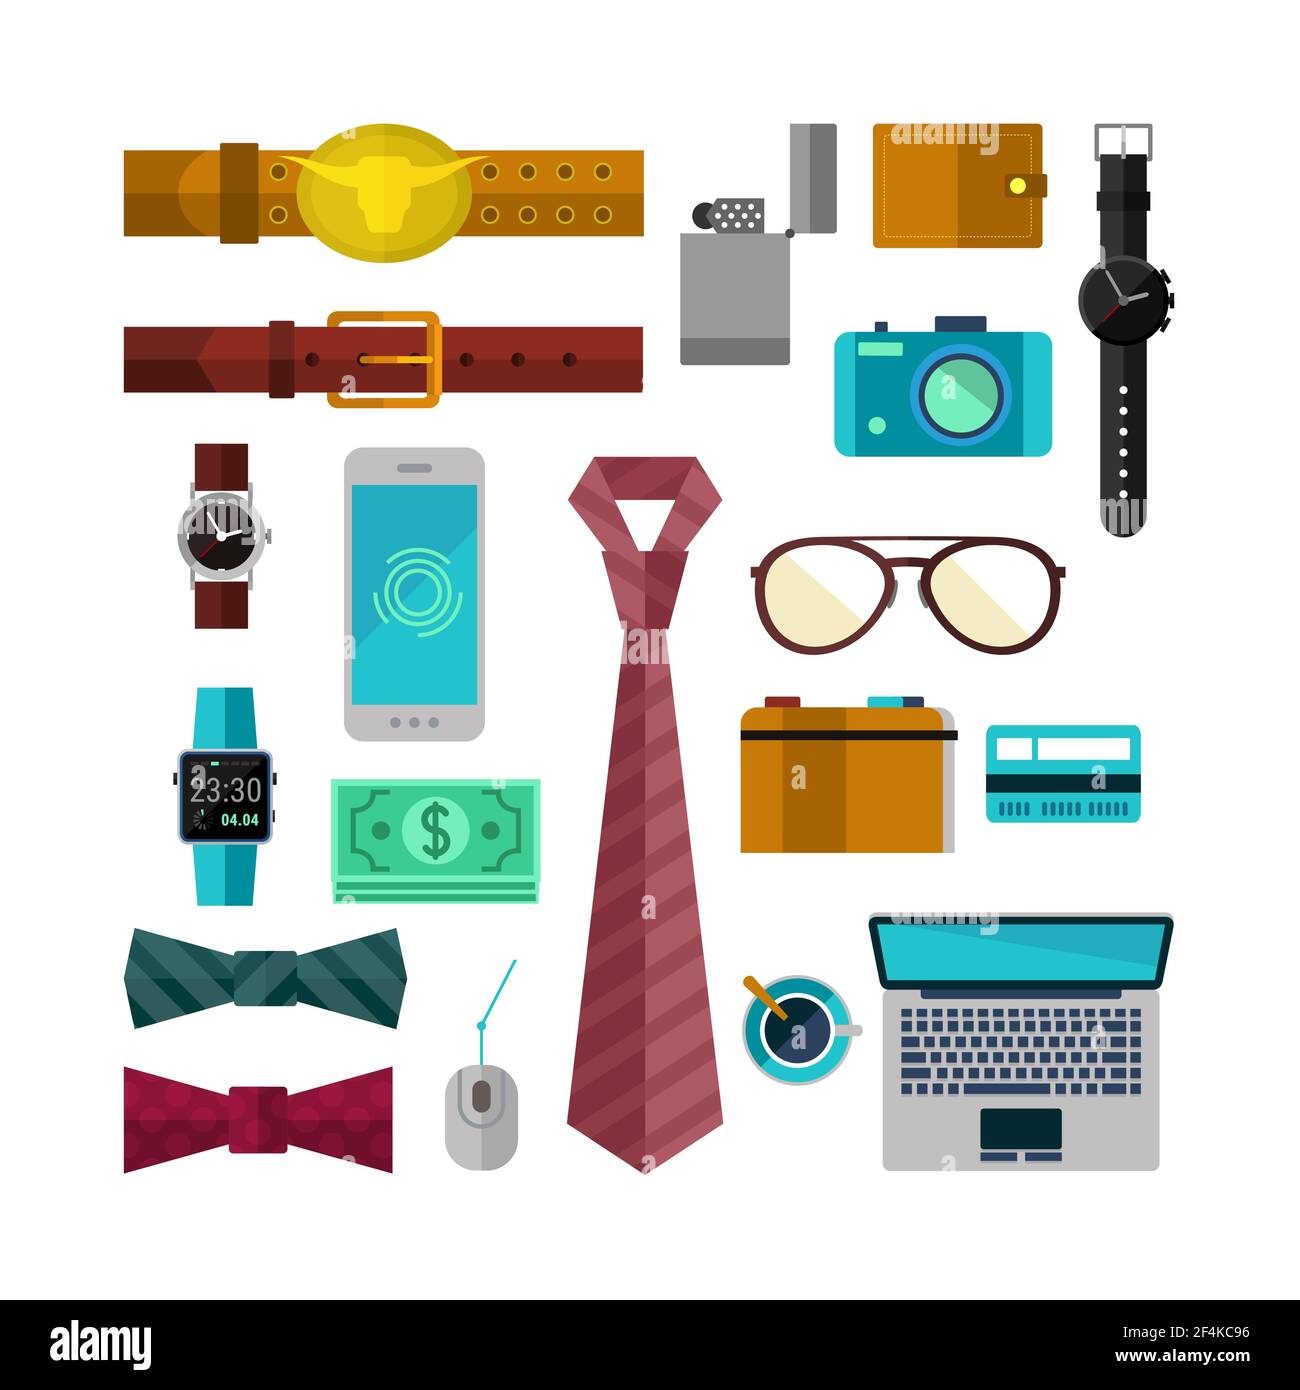 Set von Zubehör für Männer mit Computer, Telefon, Uhr und Krawatte. Vektorgrafik Stock Vektor